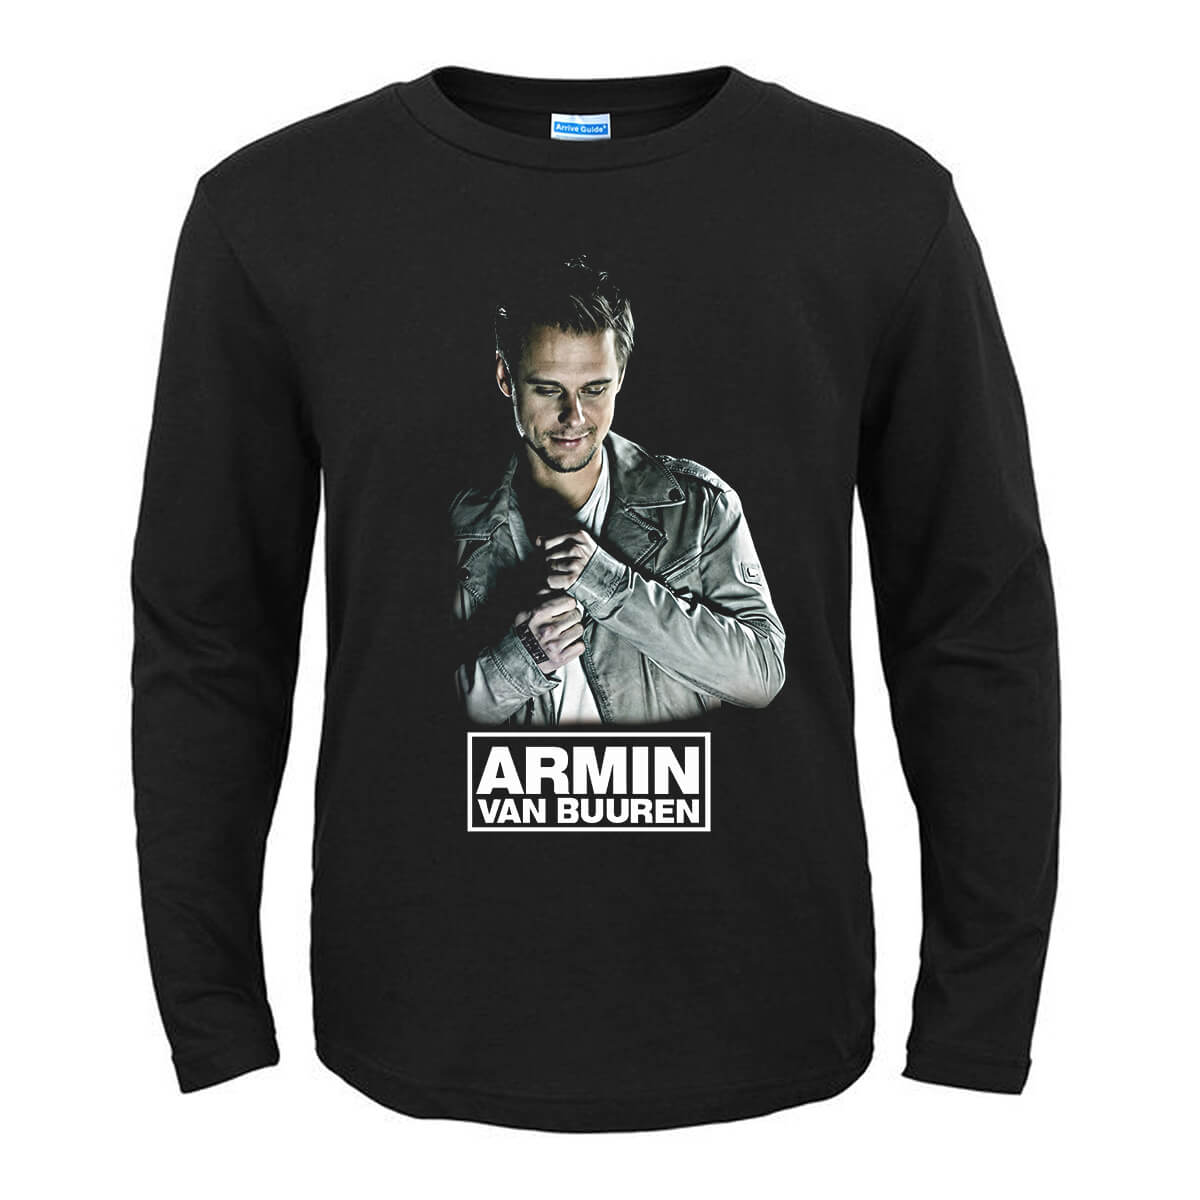 armin shirts